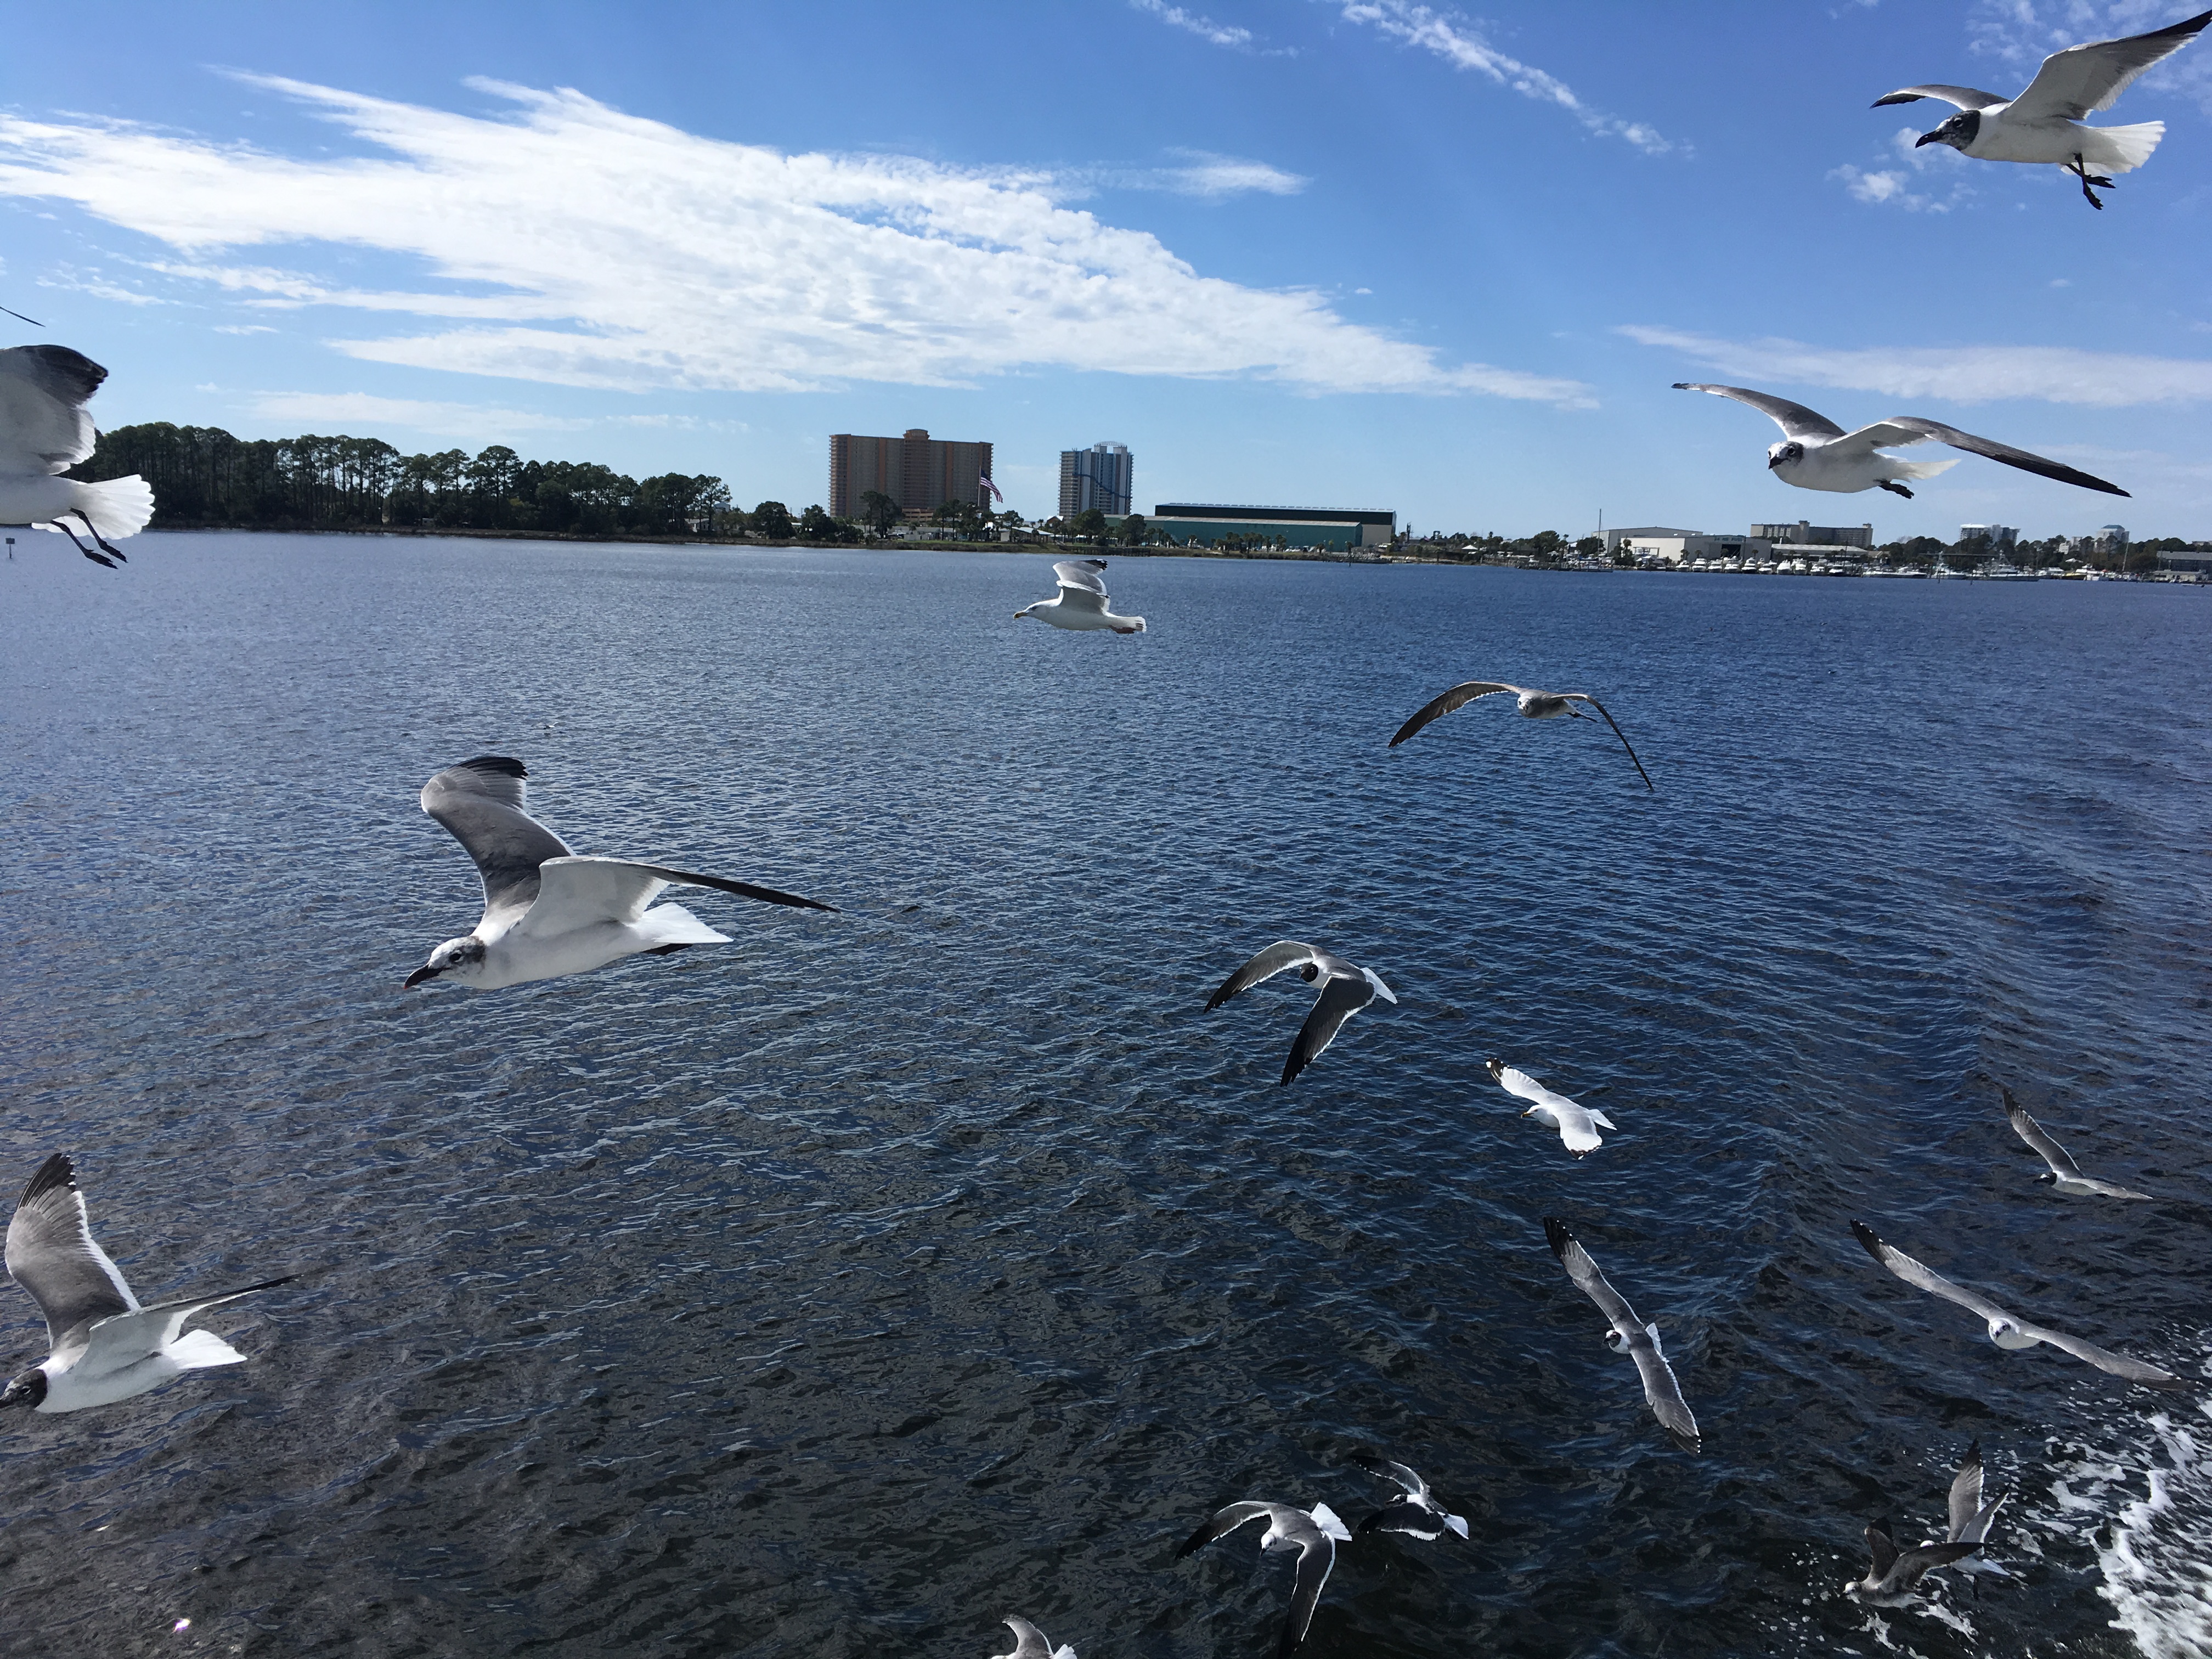 Birds flying over water